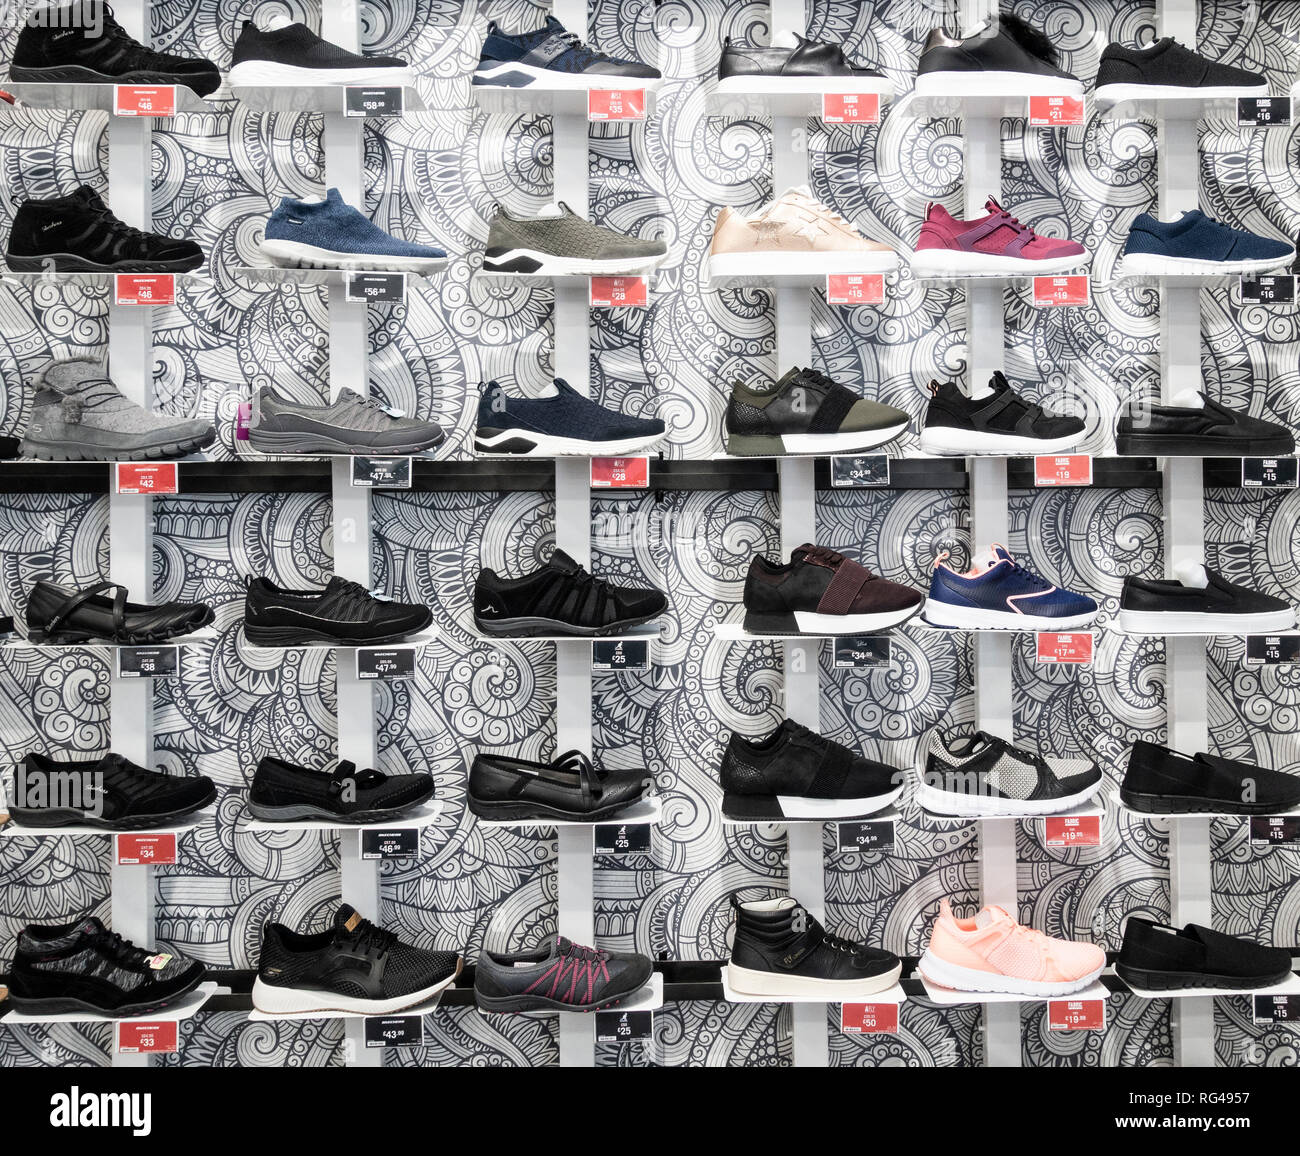 Calzature casual/formatori in un negozio di articoli sportivi. Regno Unito Foto Stock